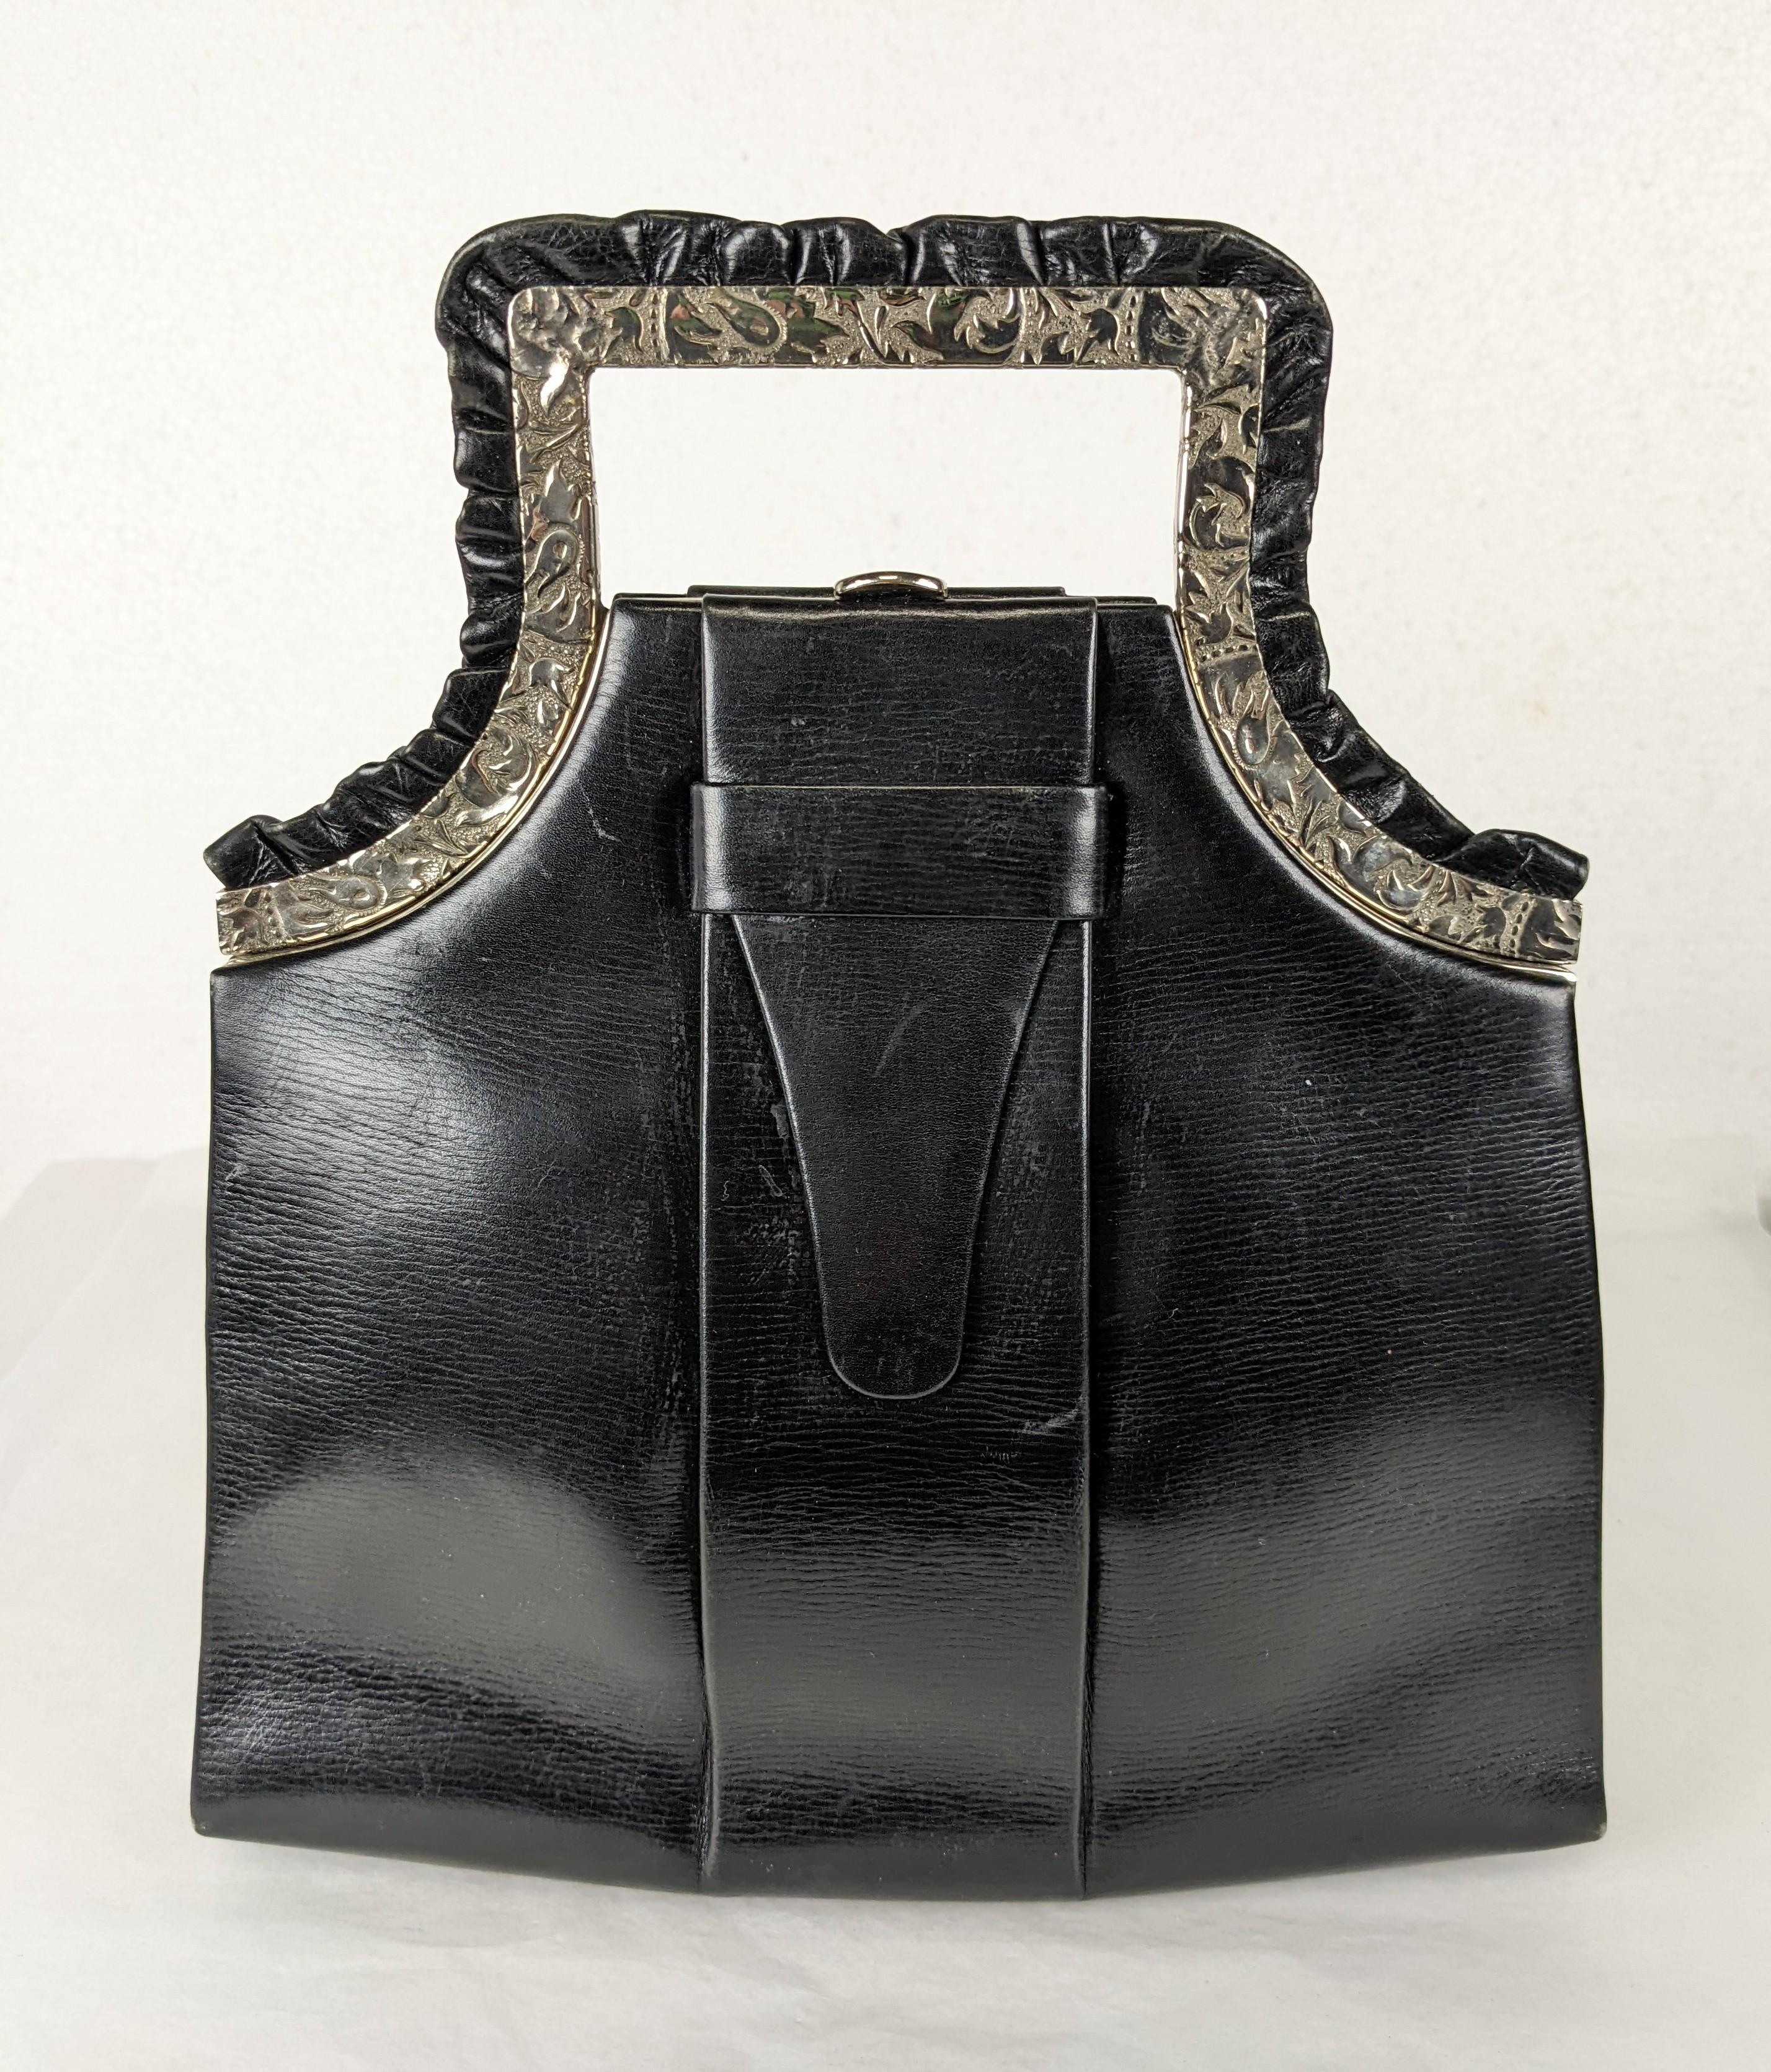 Étonnant sac à main Art Déco en veau noir avec cadre chromé ciselé et accents de volants en cuir. Une nouveauté incroyable en matière de design.  États-Unis des années 1930. 